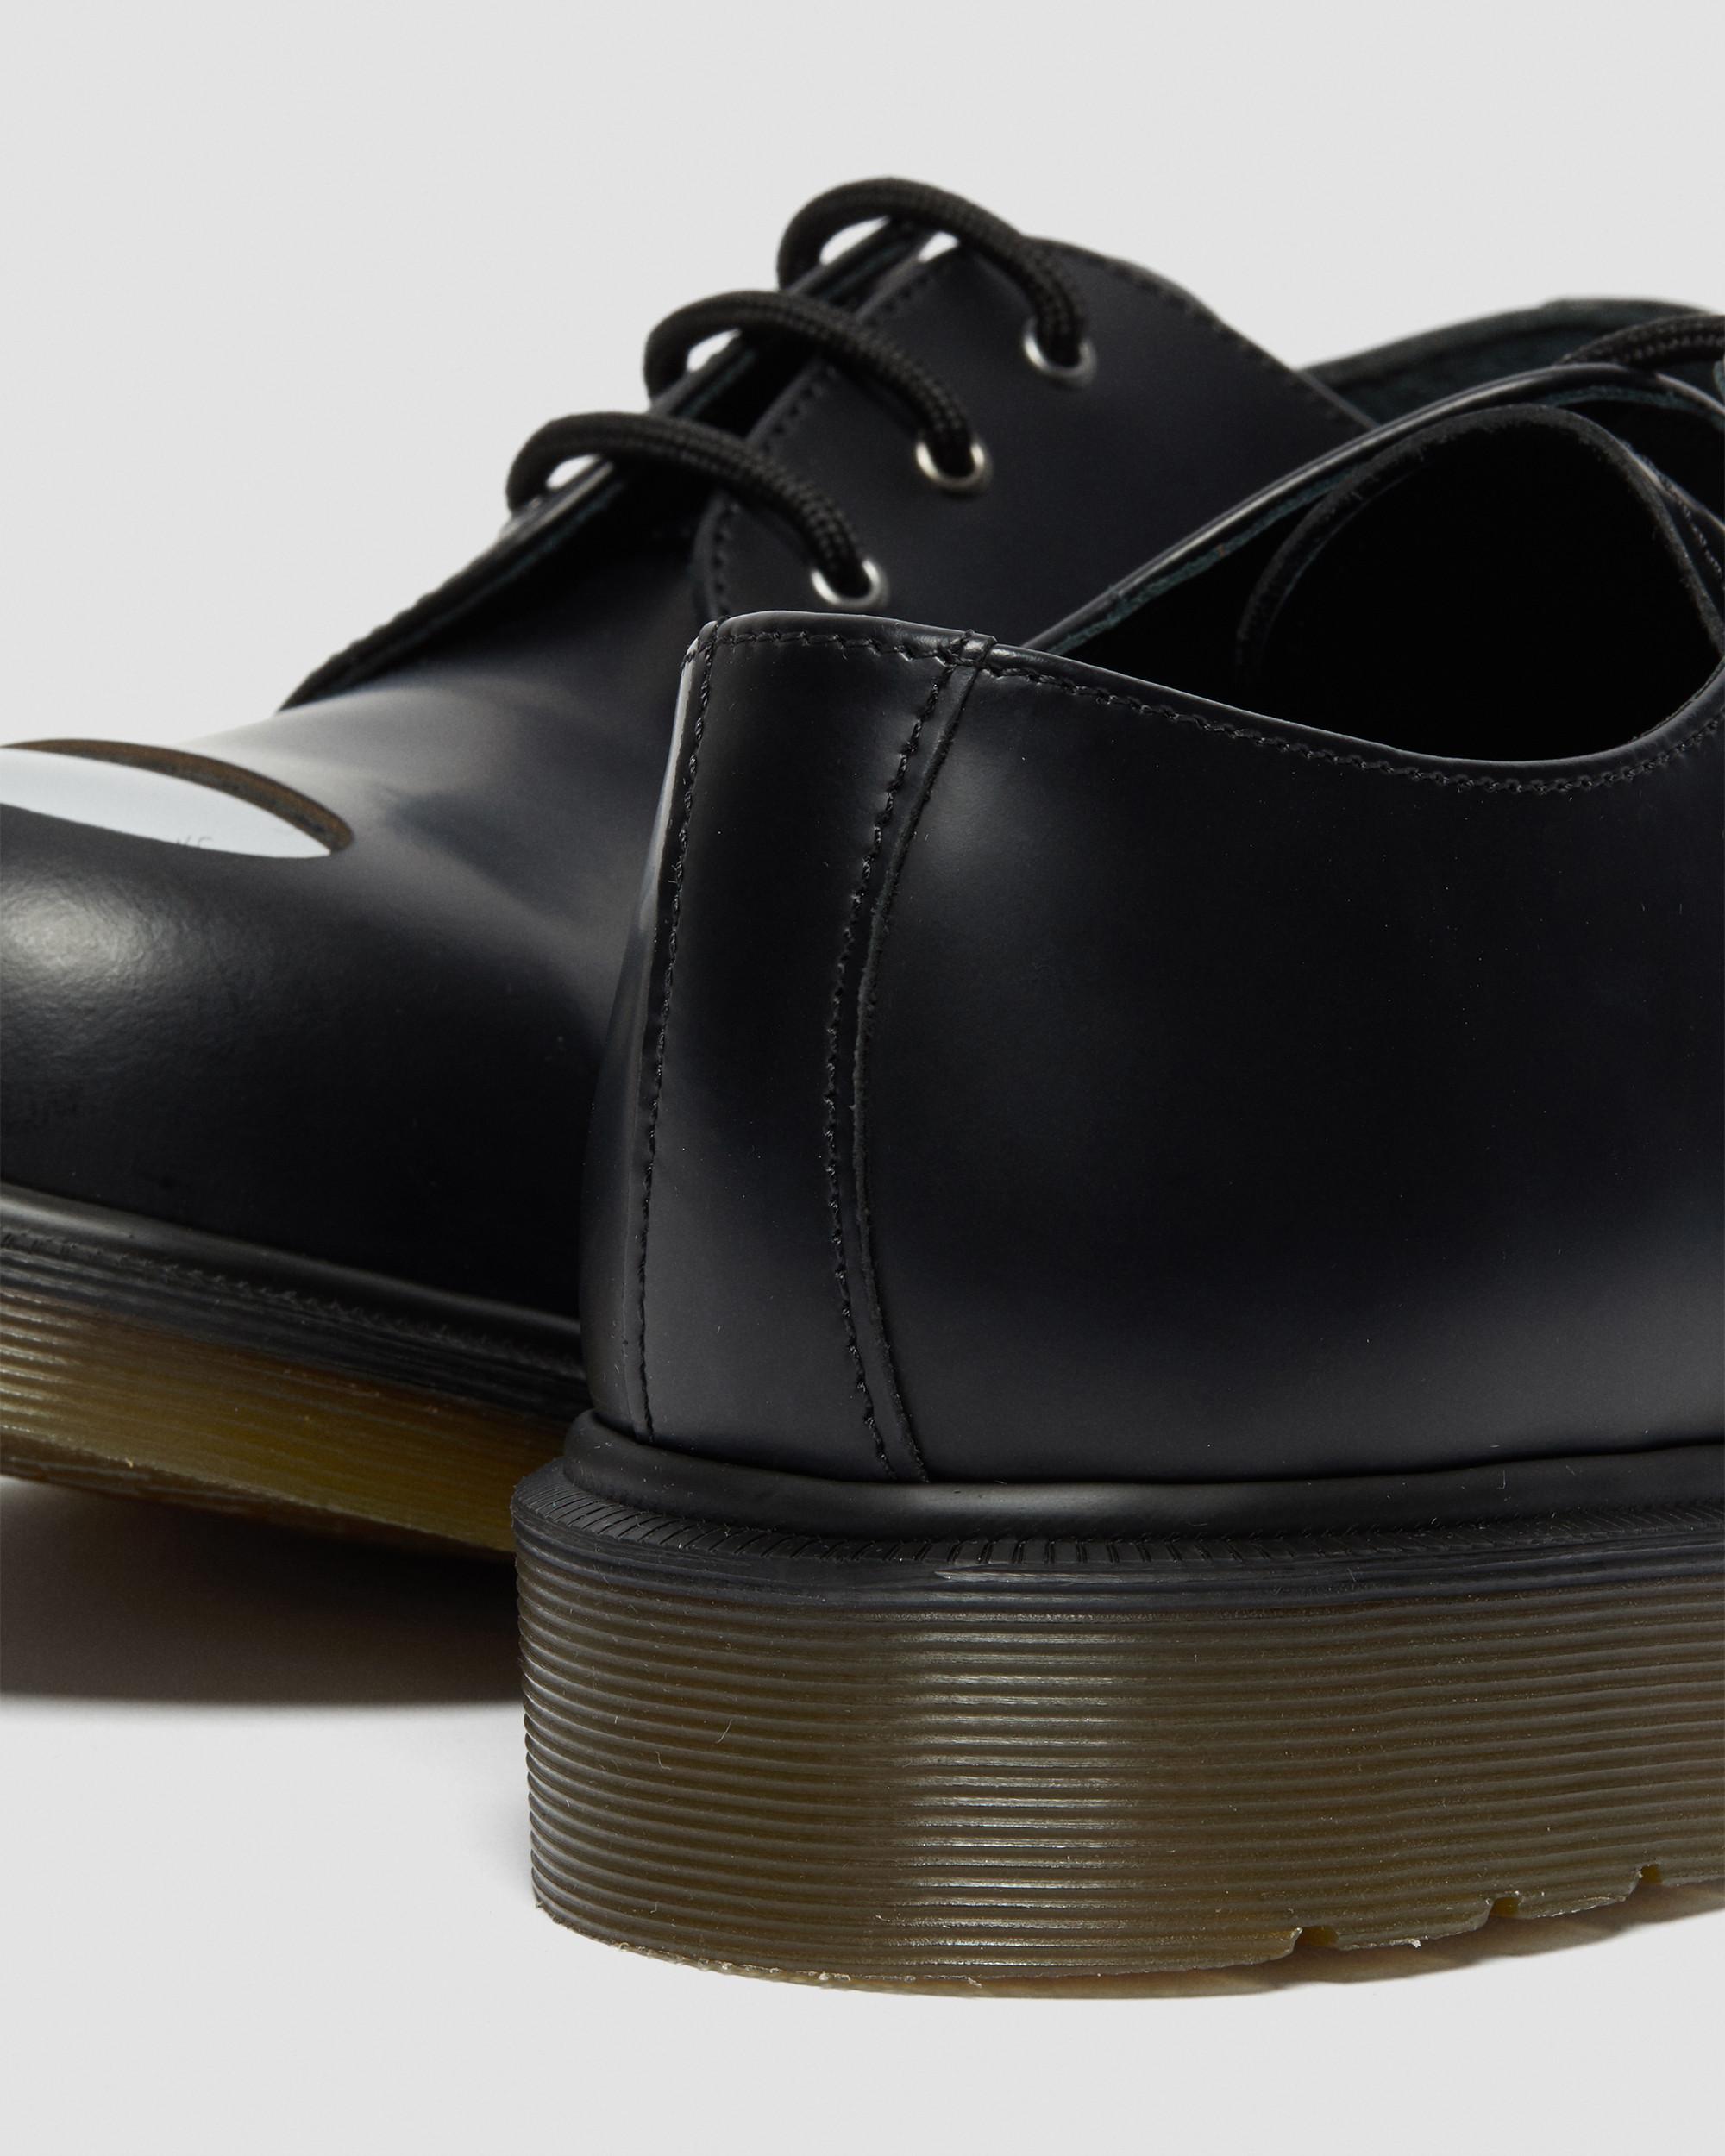 -4 Martens 1925Z Welt Black Steel Toe-Cap Shoes Vintage Dr Made in England 